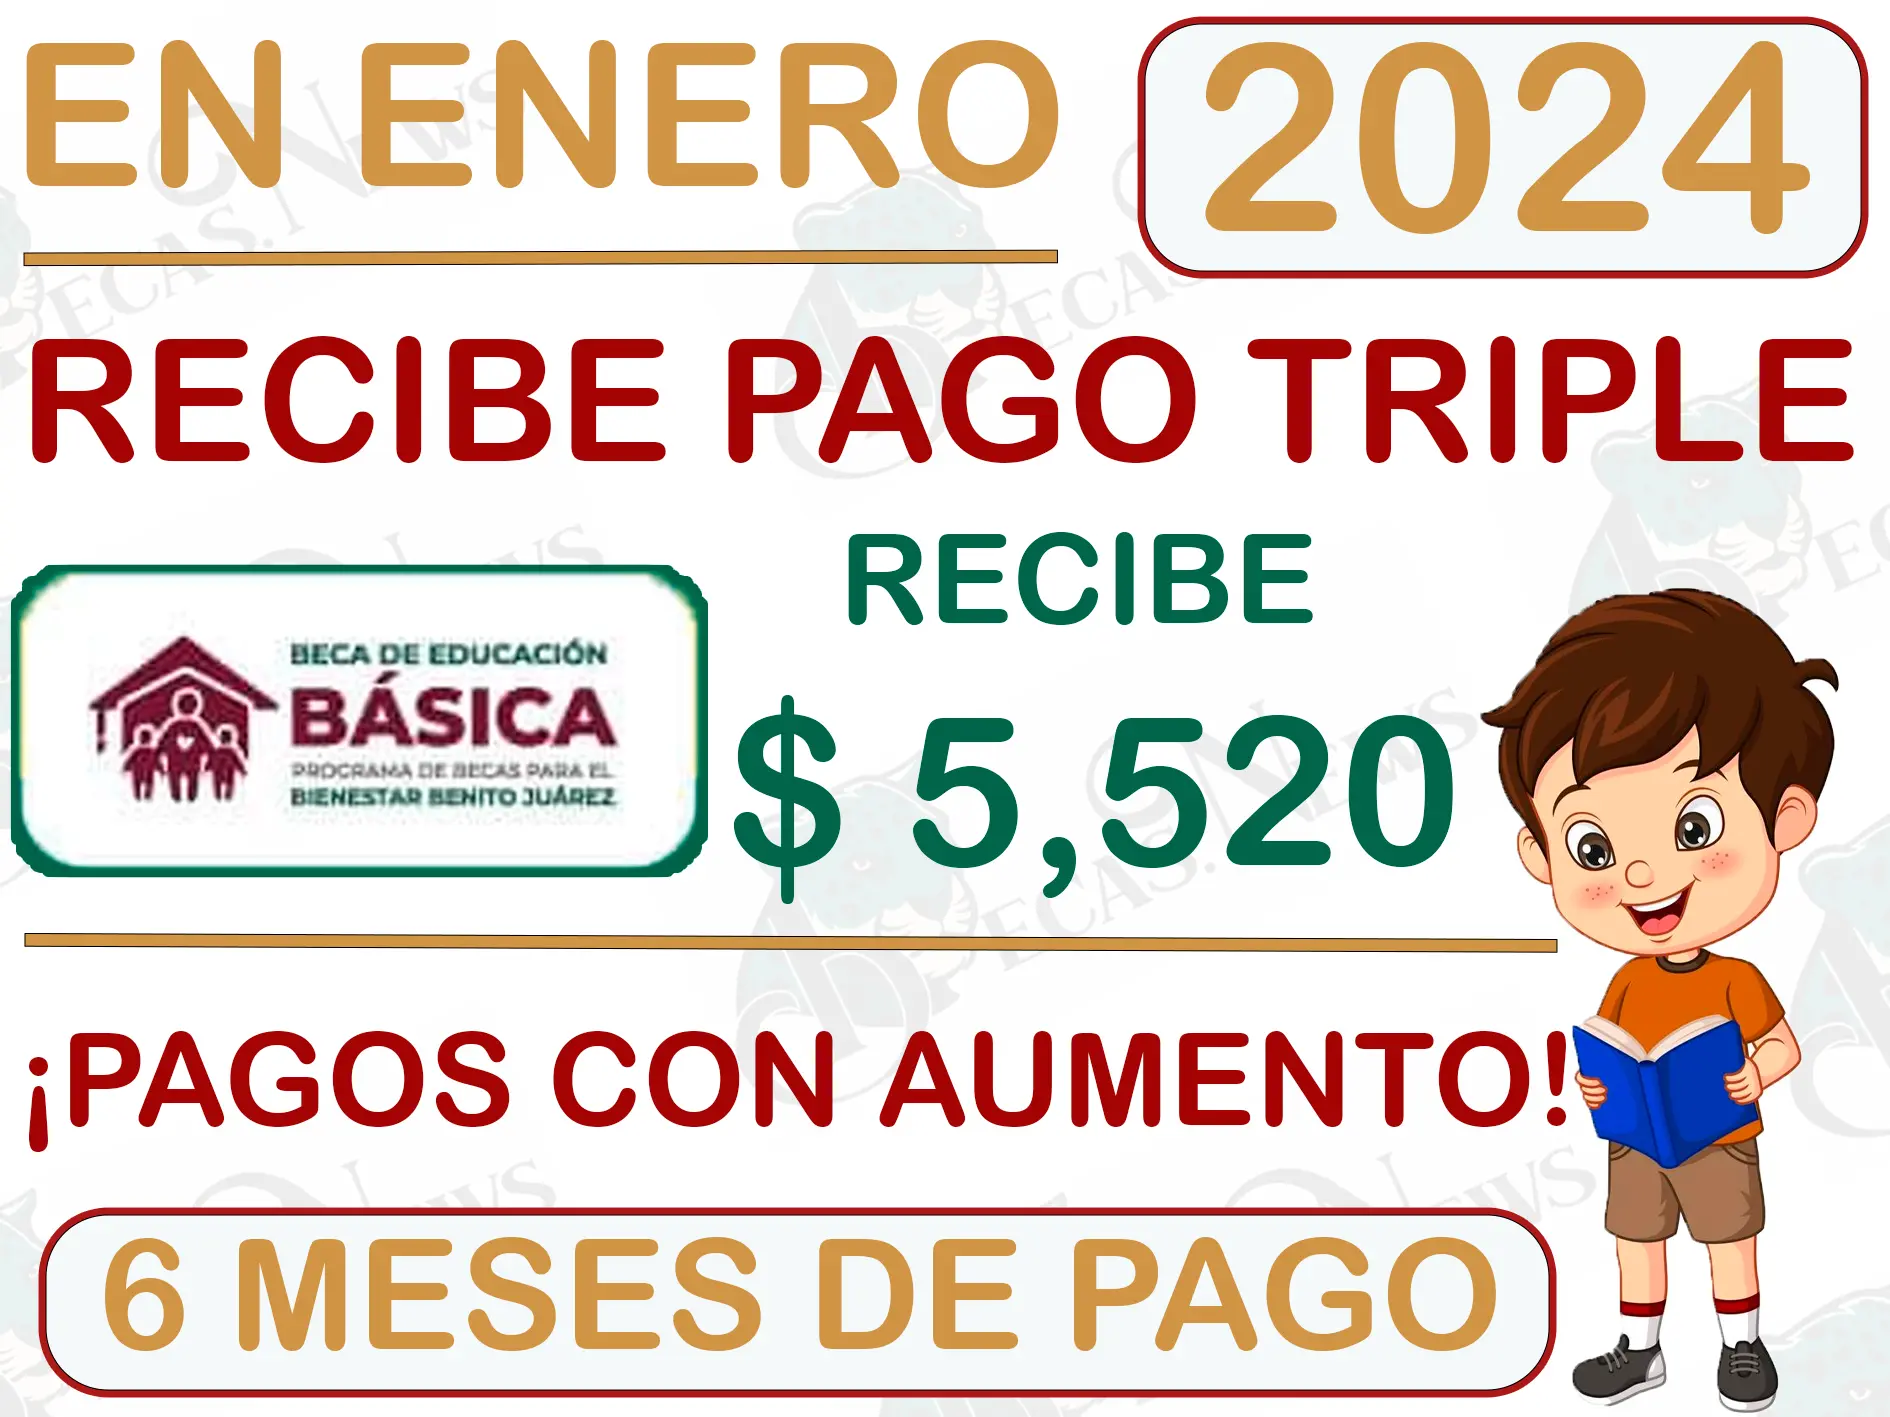 ¡Aviso de pago! Estudiantes de nivel básico recibirán $ 5,520 de pesos en enero: Becas Benito Juárez